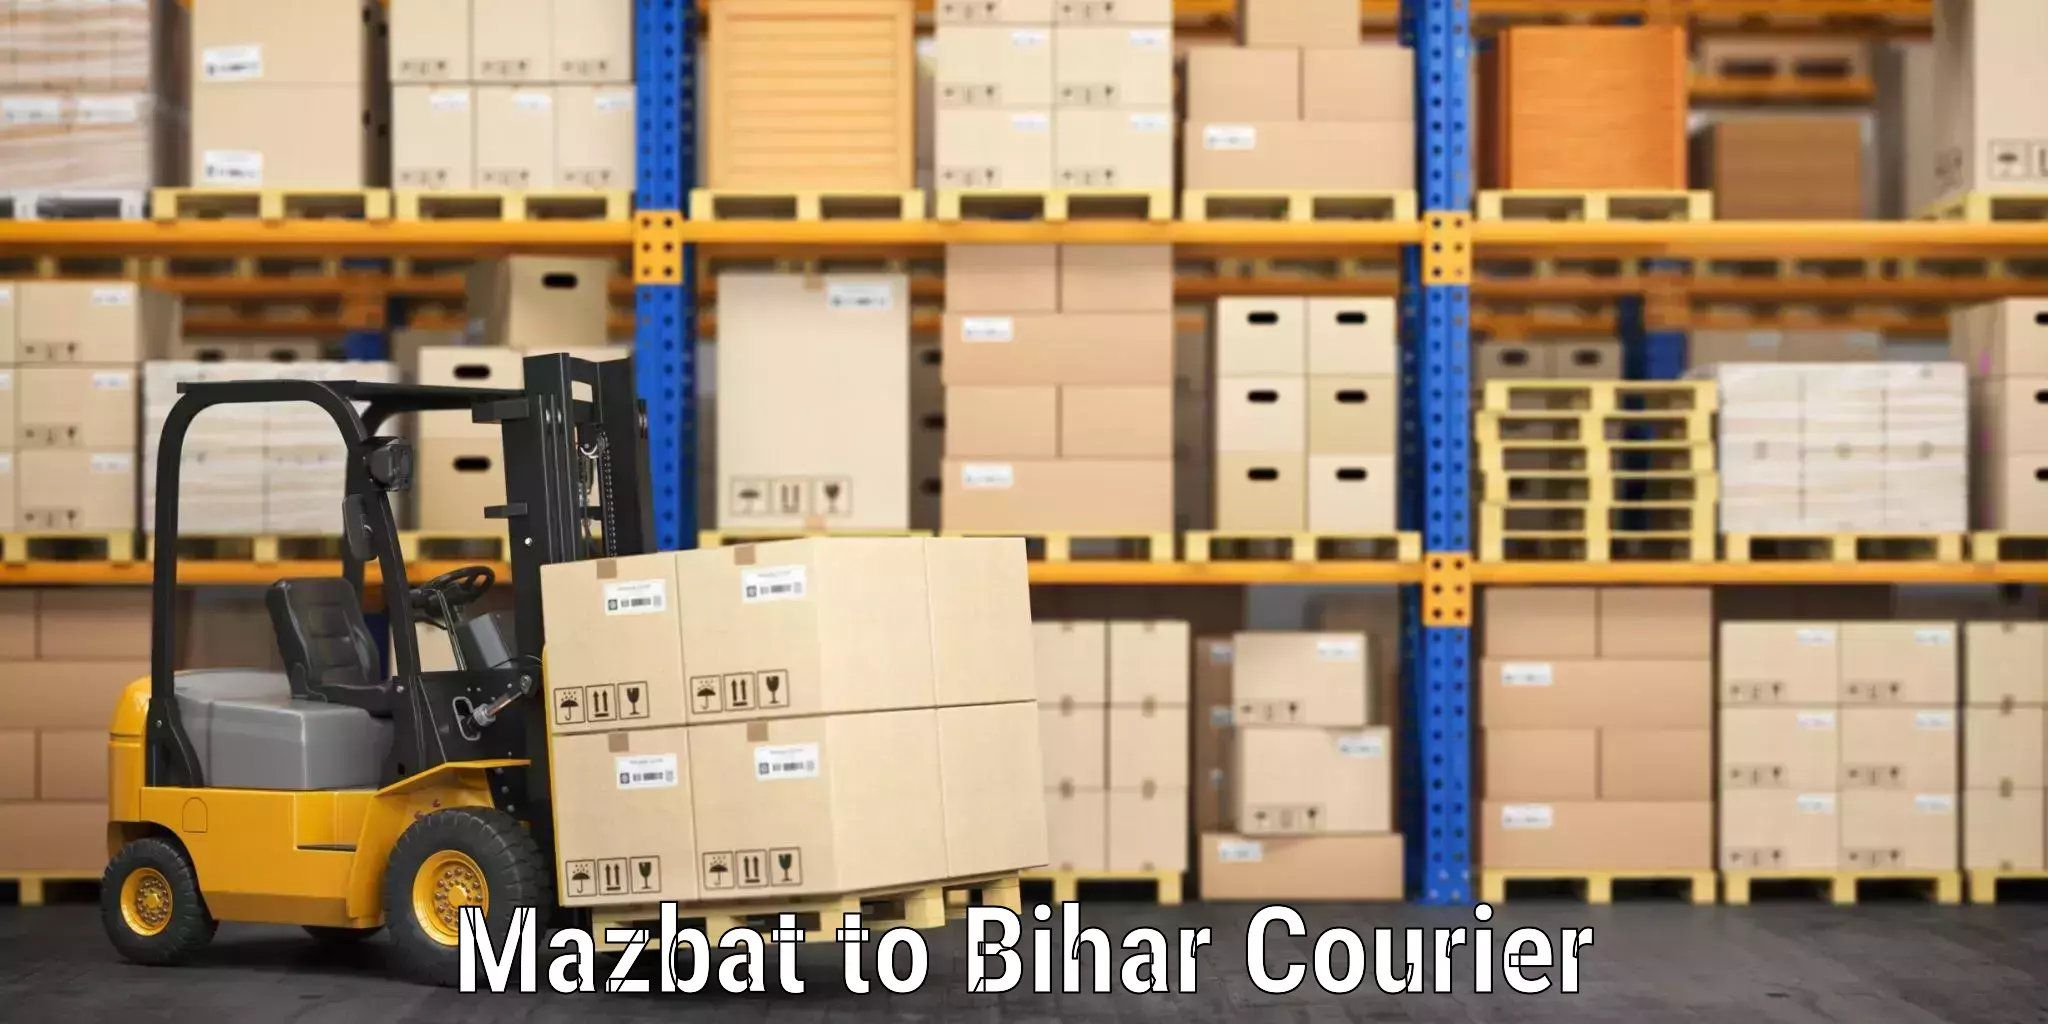 Luggage shipment tracking Mazbat to Vaishali